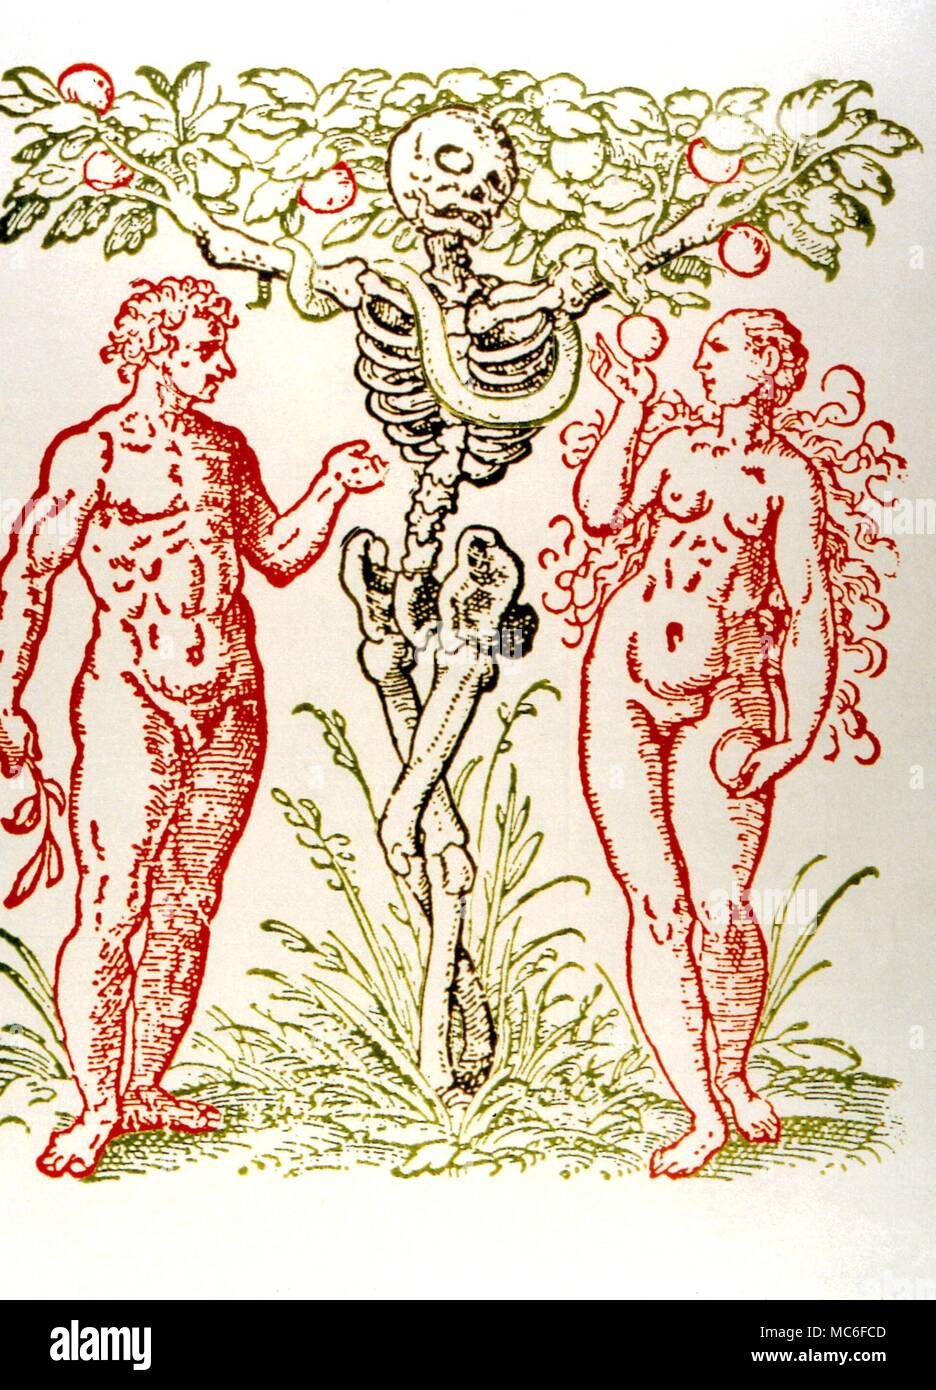 Pflanzliche der Baum der Erkenntnis, mit dem Bild des Todes als seinen Stamm, und Adam und Eva zwischen. Nach einem Holzschnitt aus dem 16. Jahrhundert Stockfoto